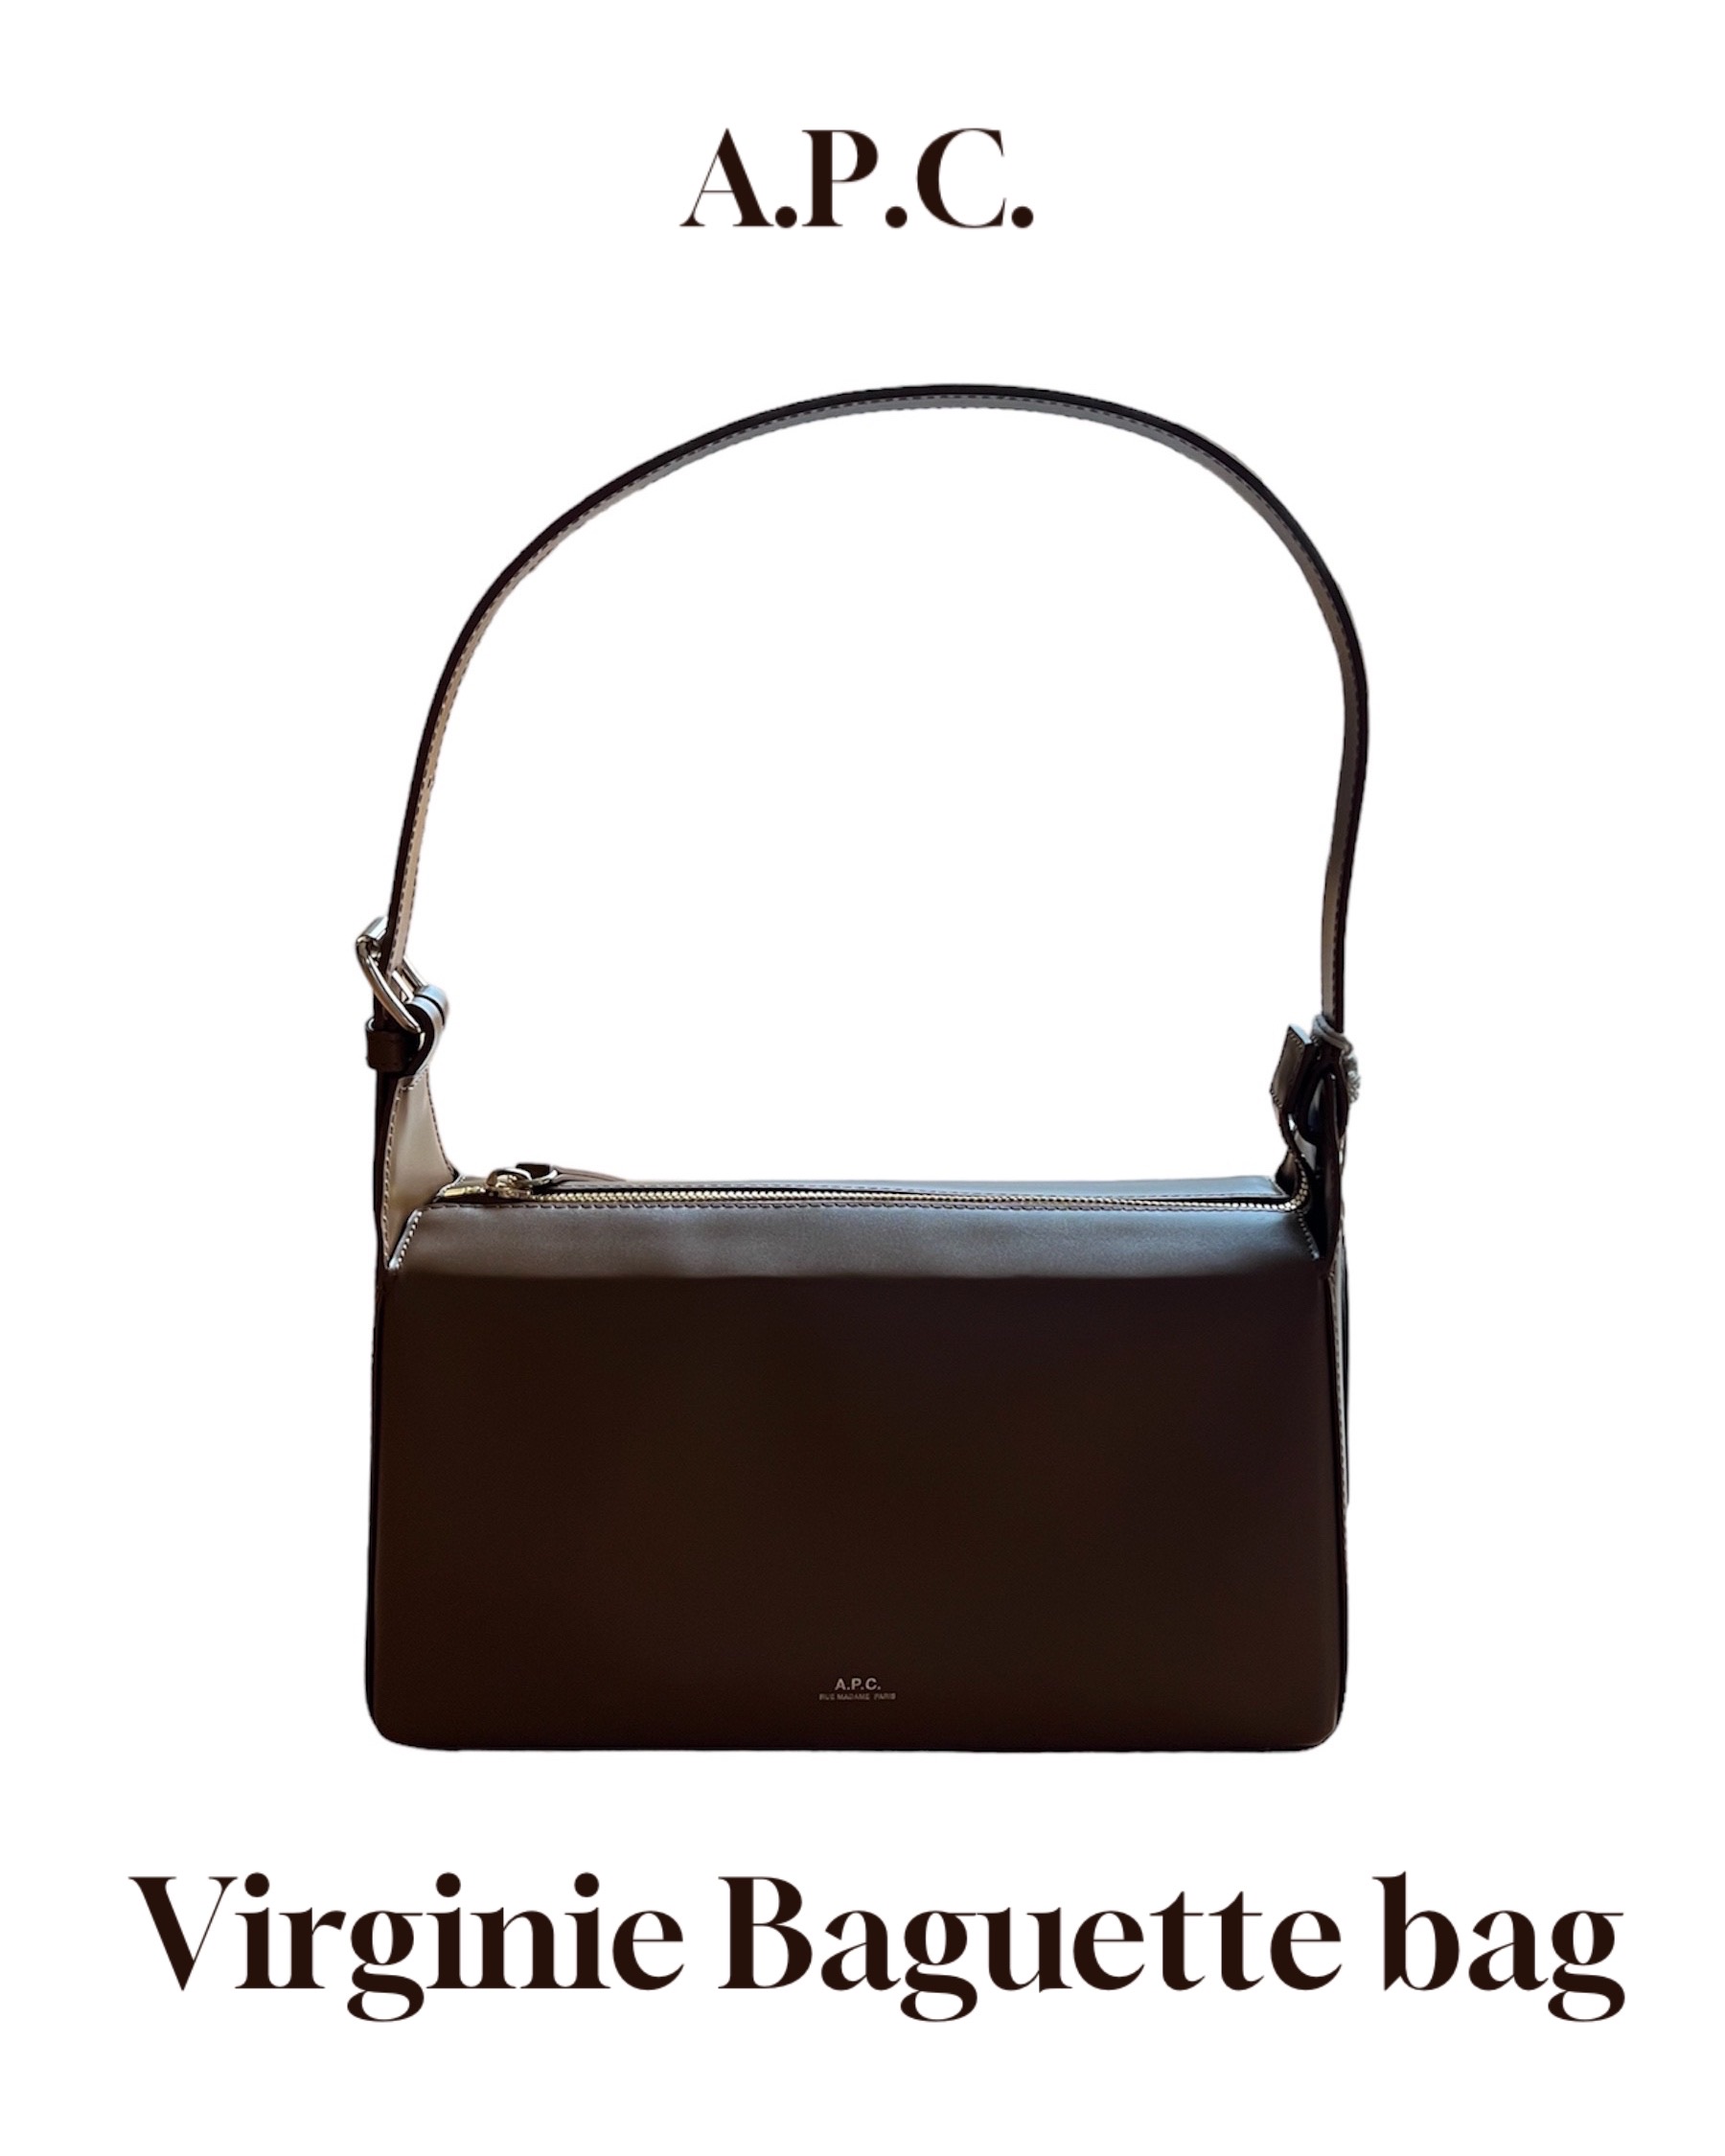 A.P.C. Virginie Baguette bag